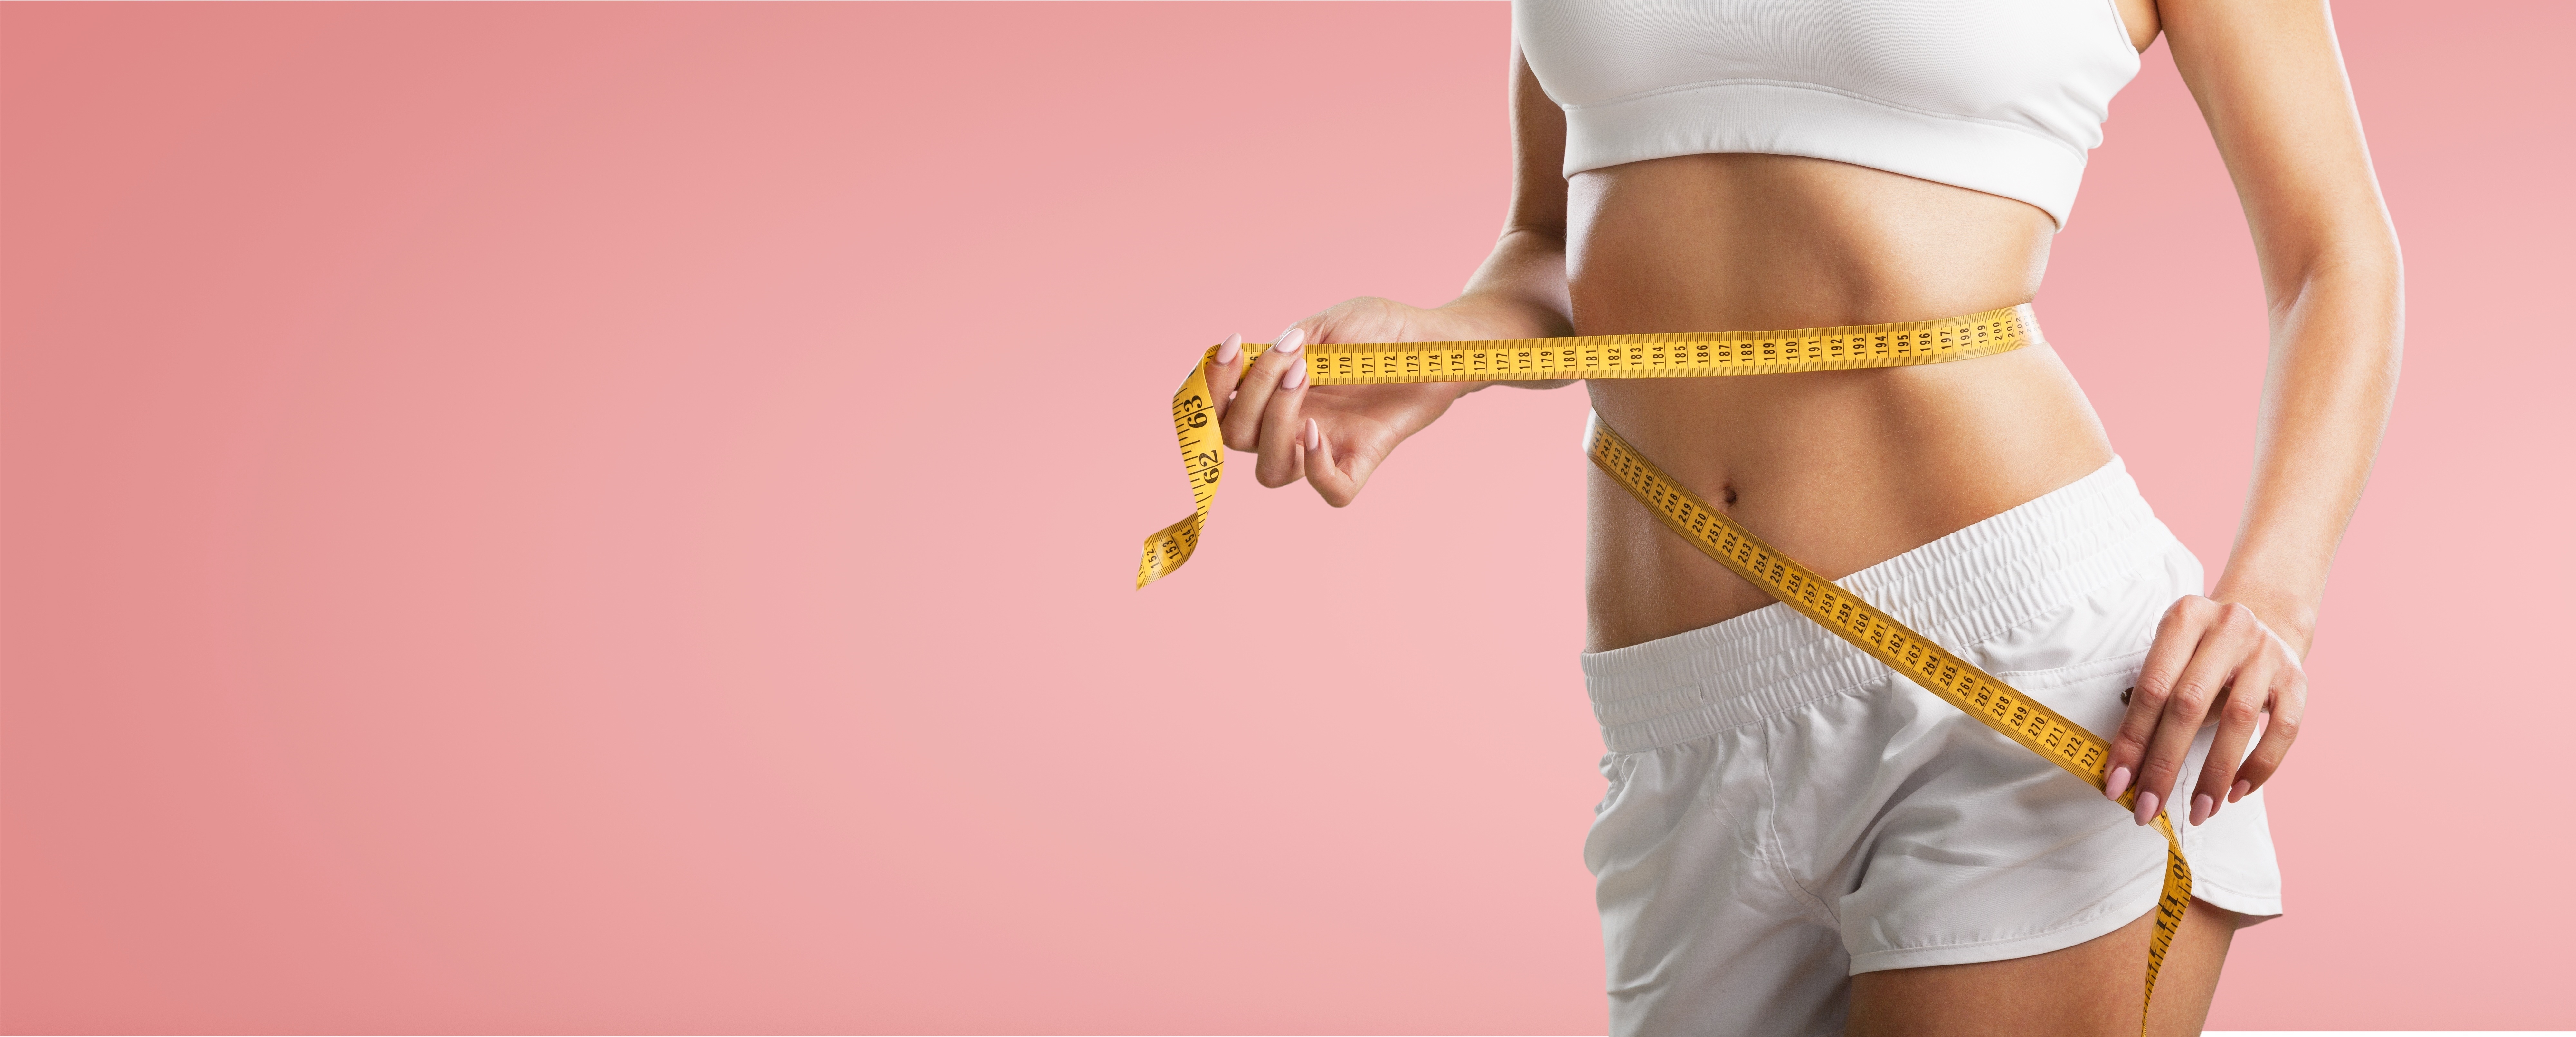 Perdre du poids accroît le risque de troubles du comportement alimentaire. © BillionPhotos.com, Adobe Stock